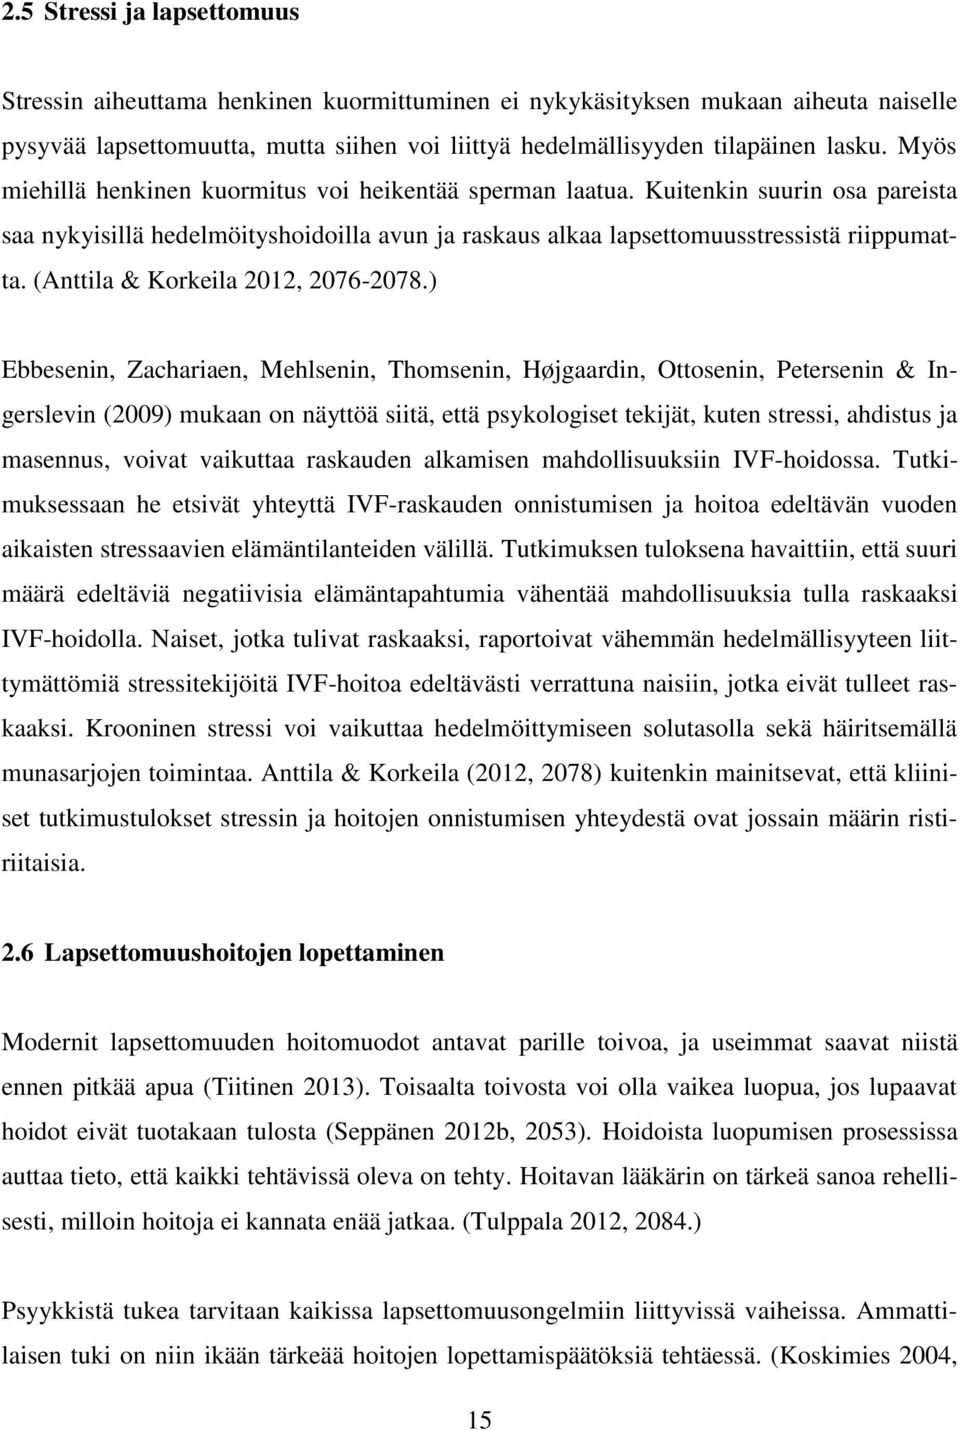 (Anttila & Korkeila 2012, 2076-2078.